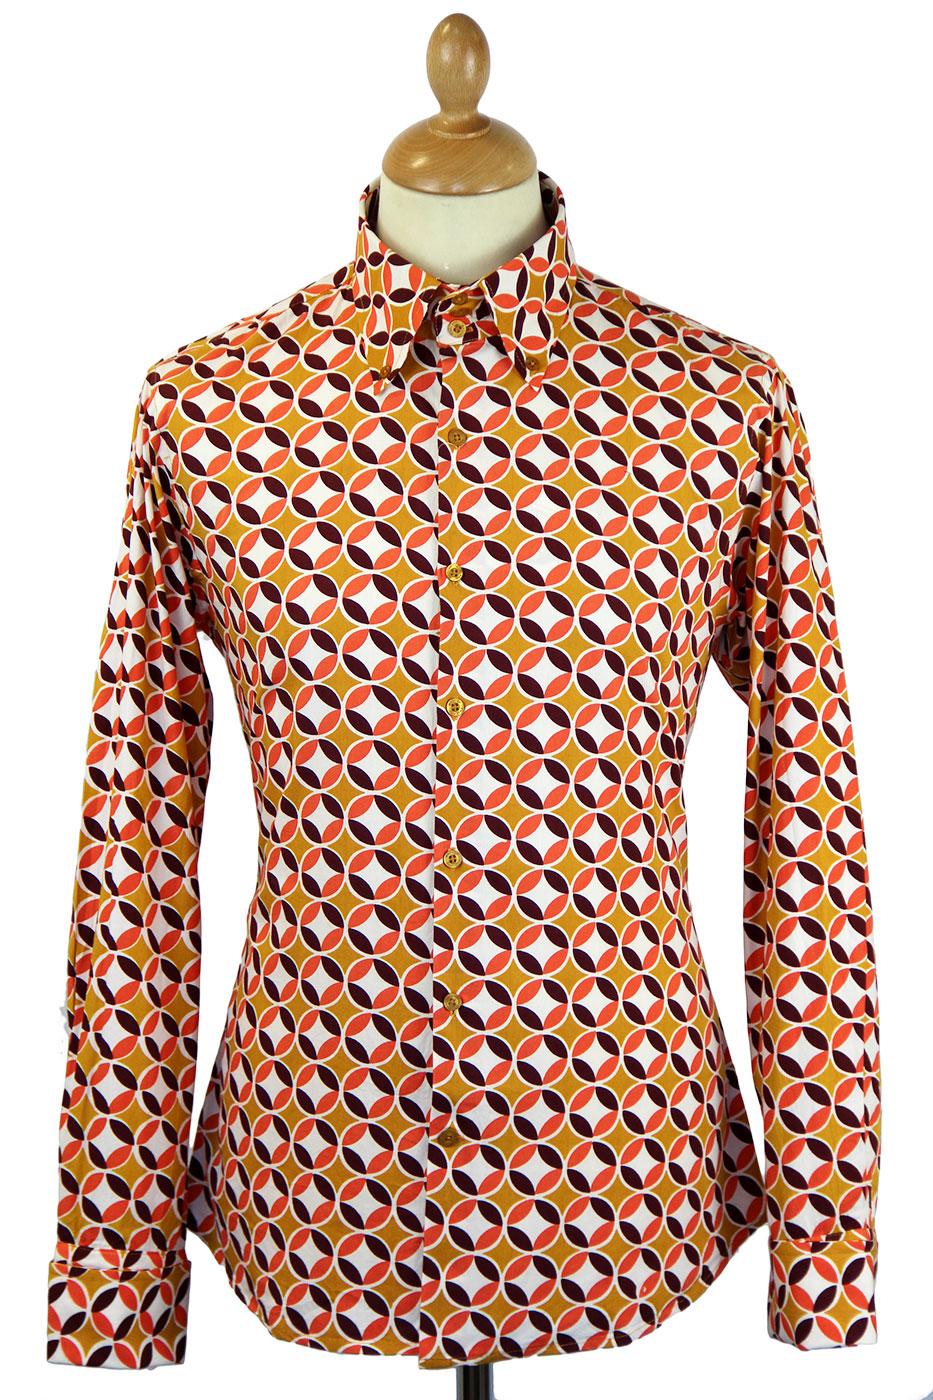 MADCAP ENGLAND Sunset Retro Sixties High Collar Mod Shirt Mustard